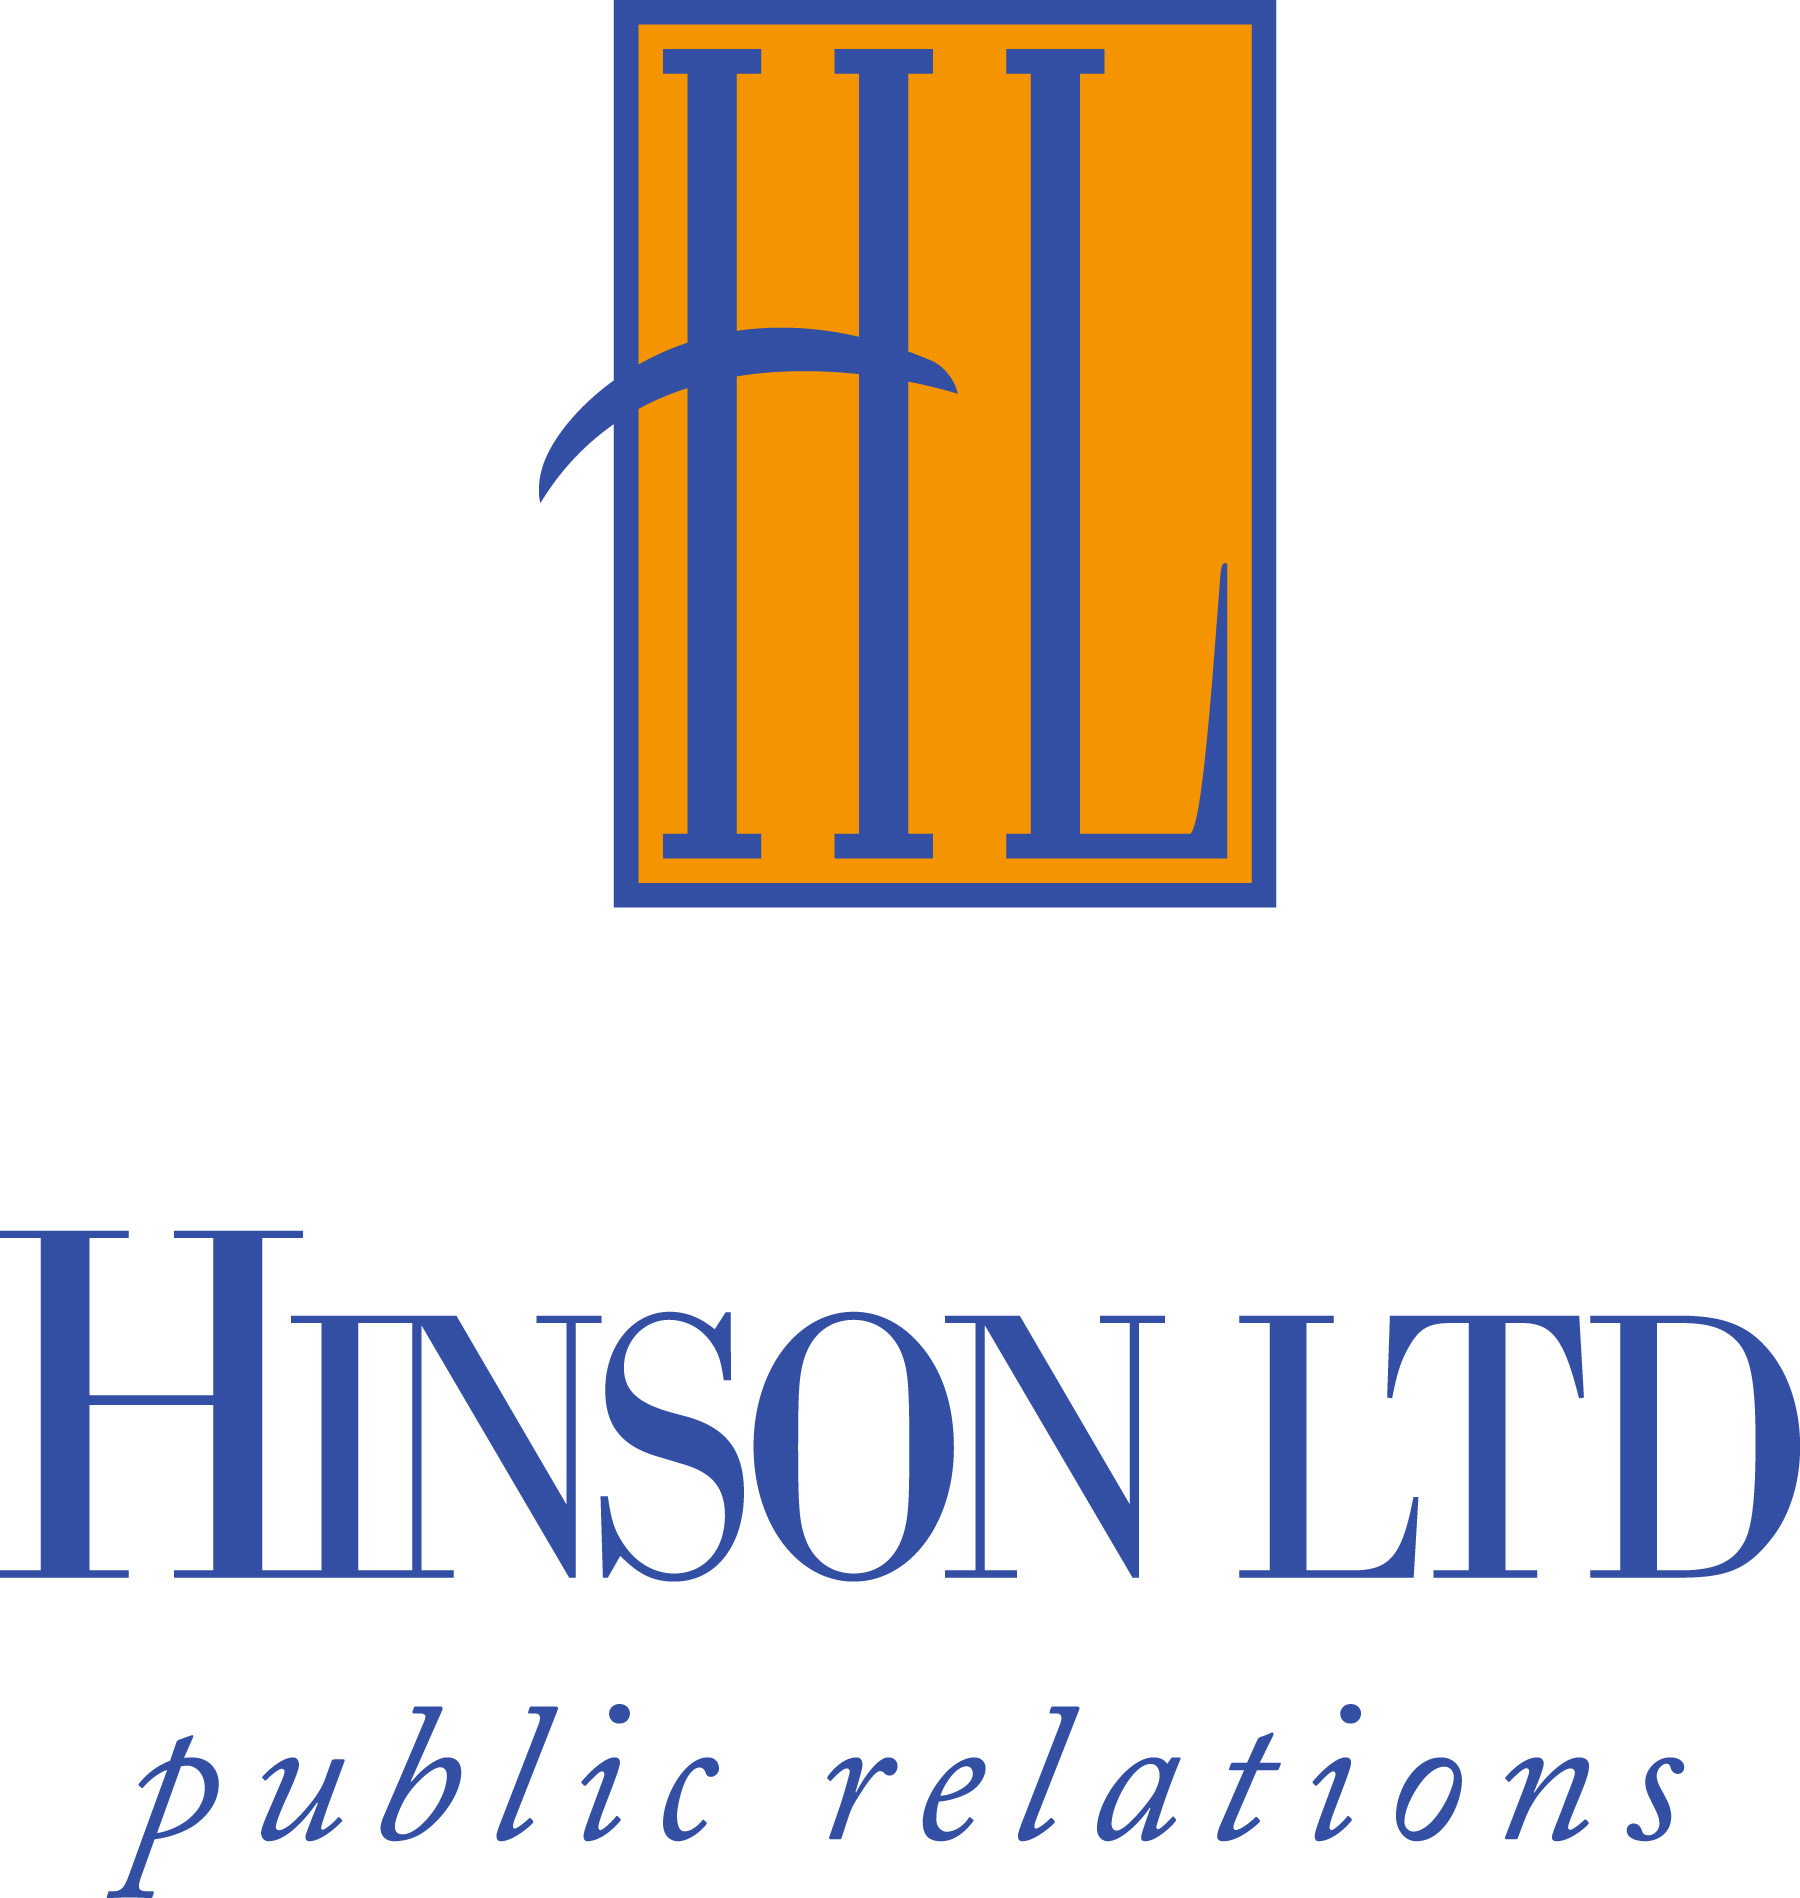 Hinson_logo color.jpg